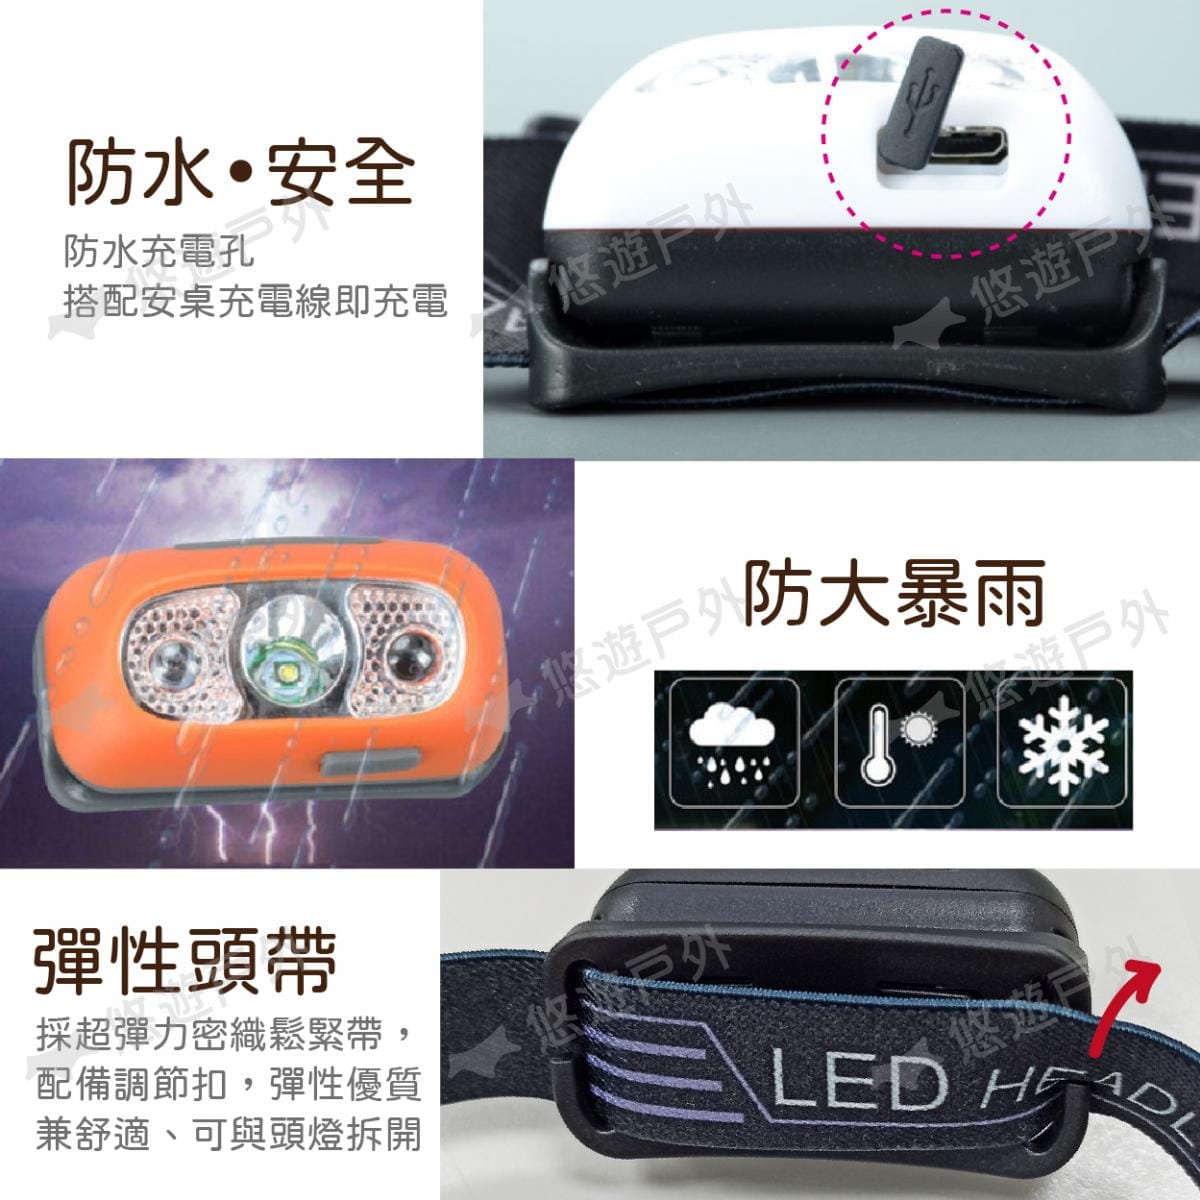 【悠遊】Q5 LED強光輕量頭燈 感應頭燈 USB充電迷你 防水 可拆 居家 露營 夜釣 應急照明 5